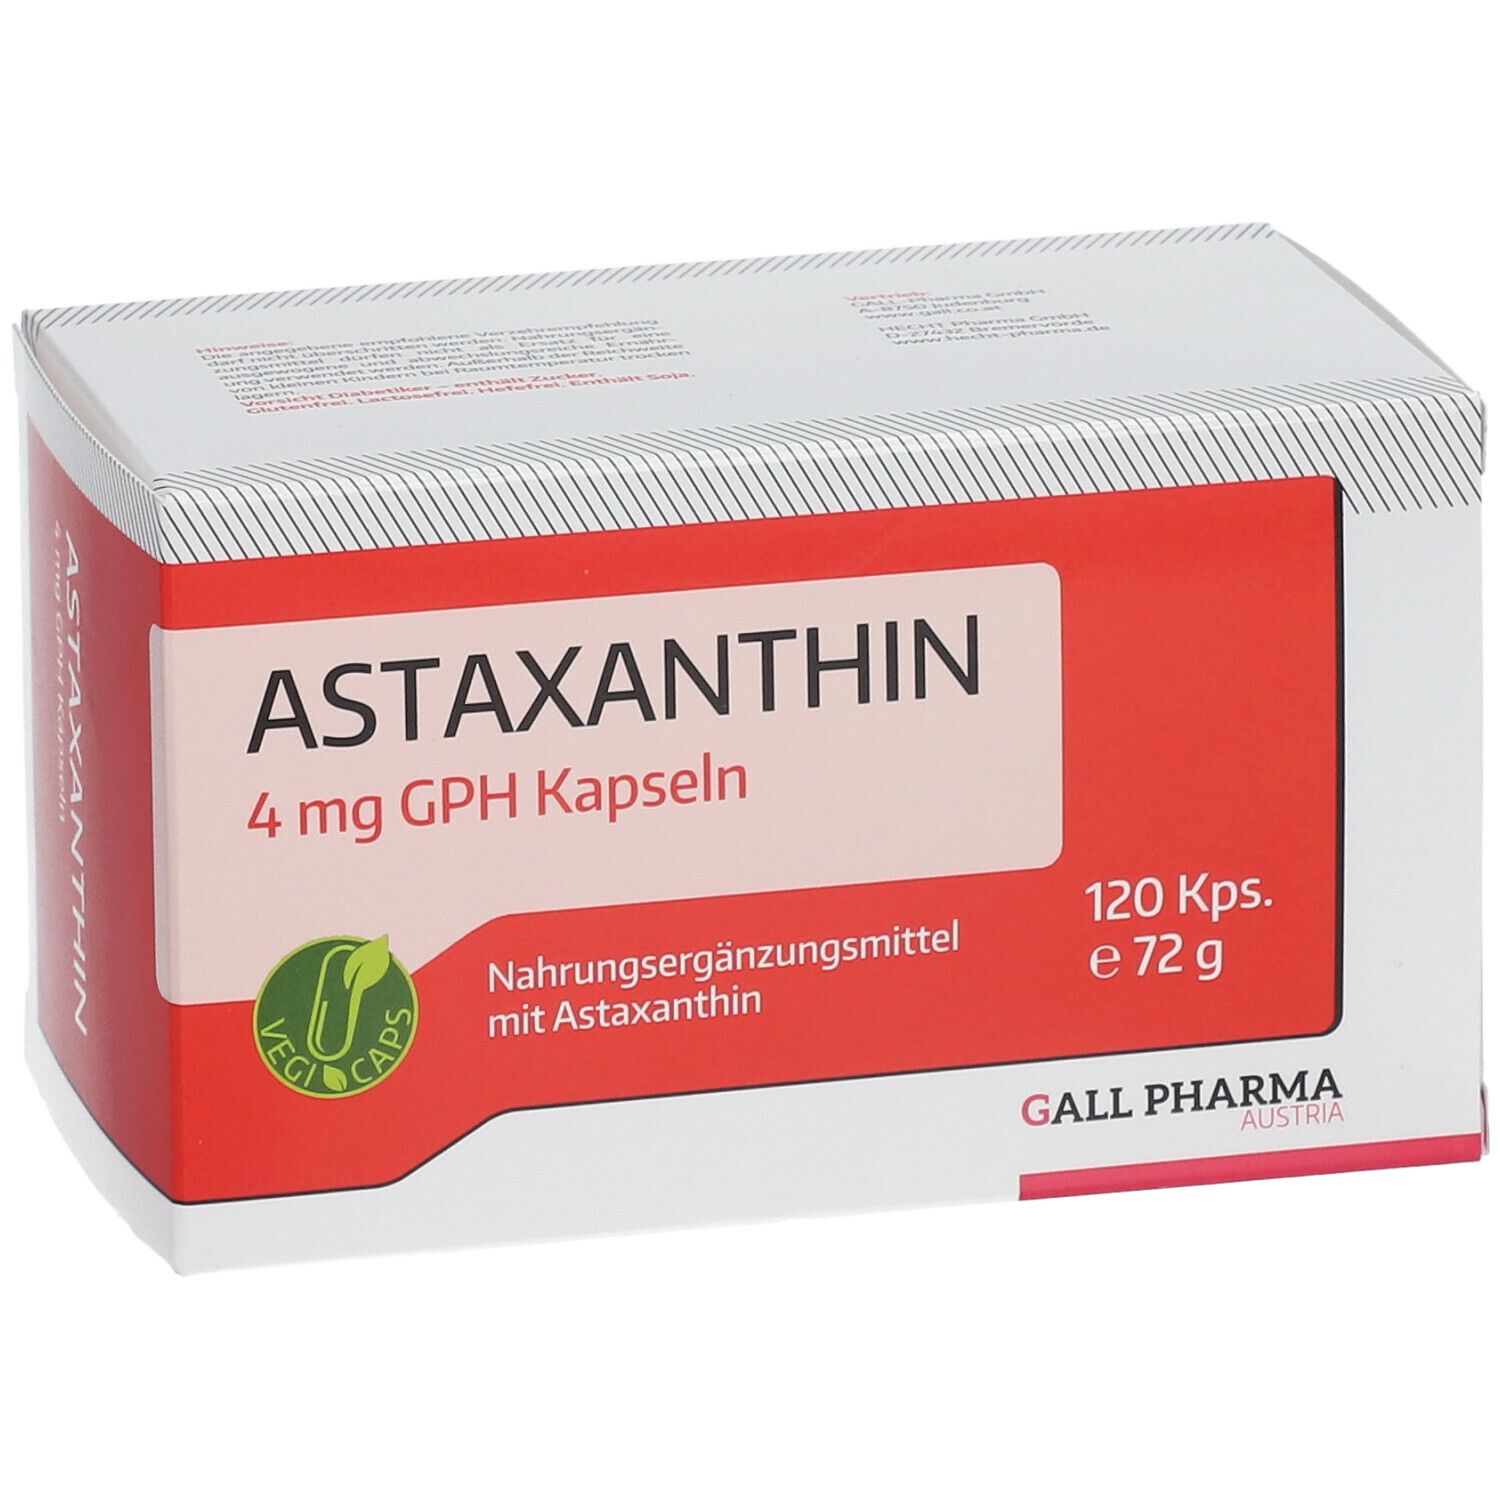 GALL PHARMA Astaxanthin 4 mg GPH